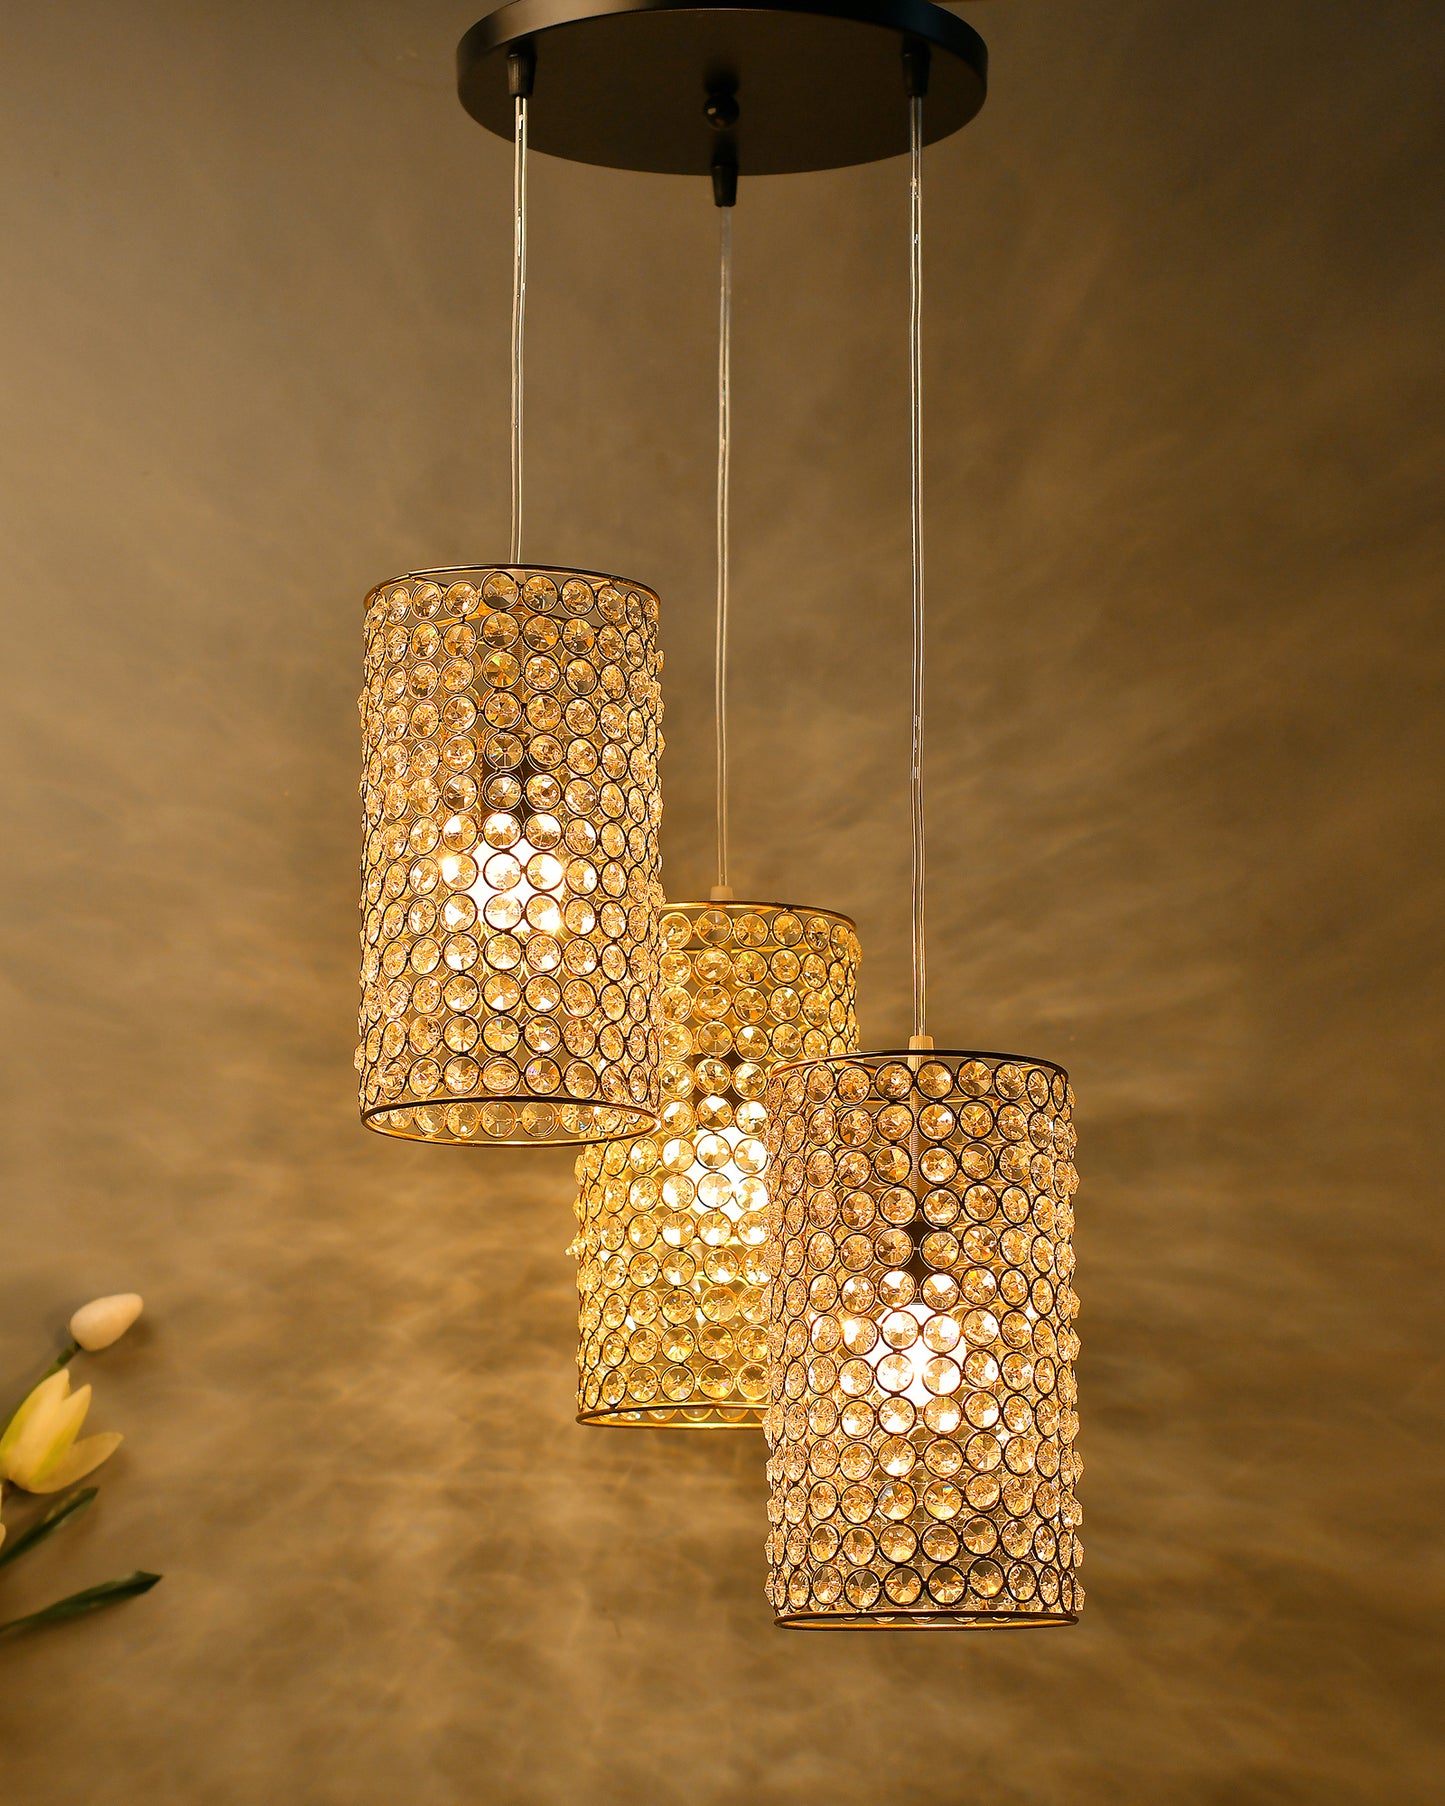 3-Lights Round Golden Cluster Chandelier Crystal Golden Barrel Hanging Light, E27 Holder, Decorative, URBAN Retro, Nordic Style, LED/Filament Bulb